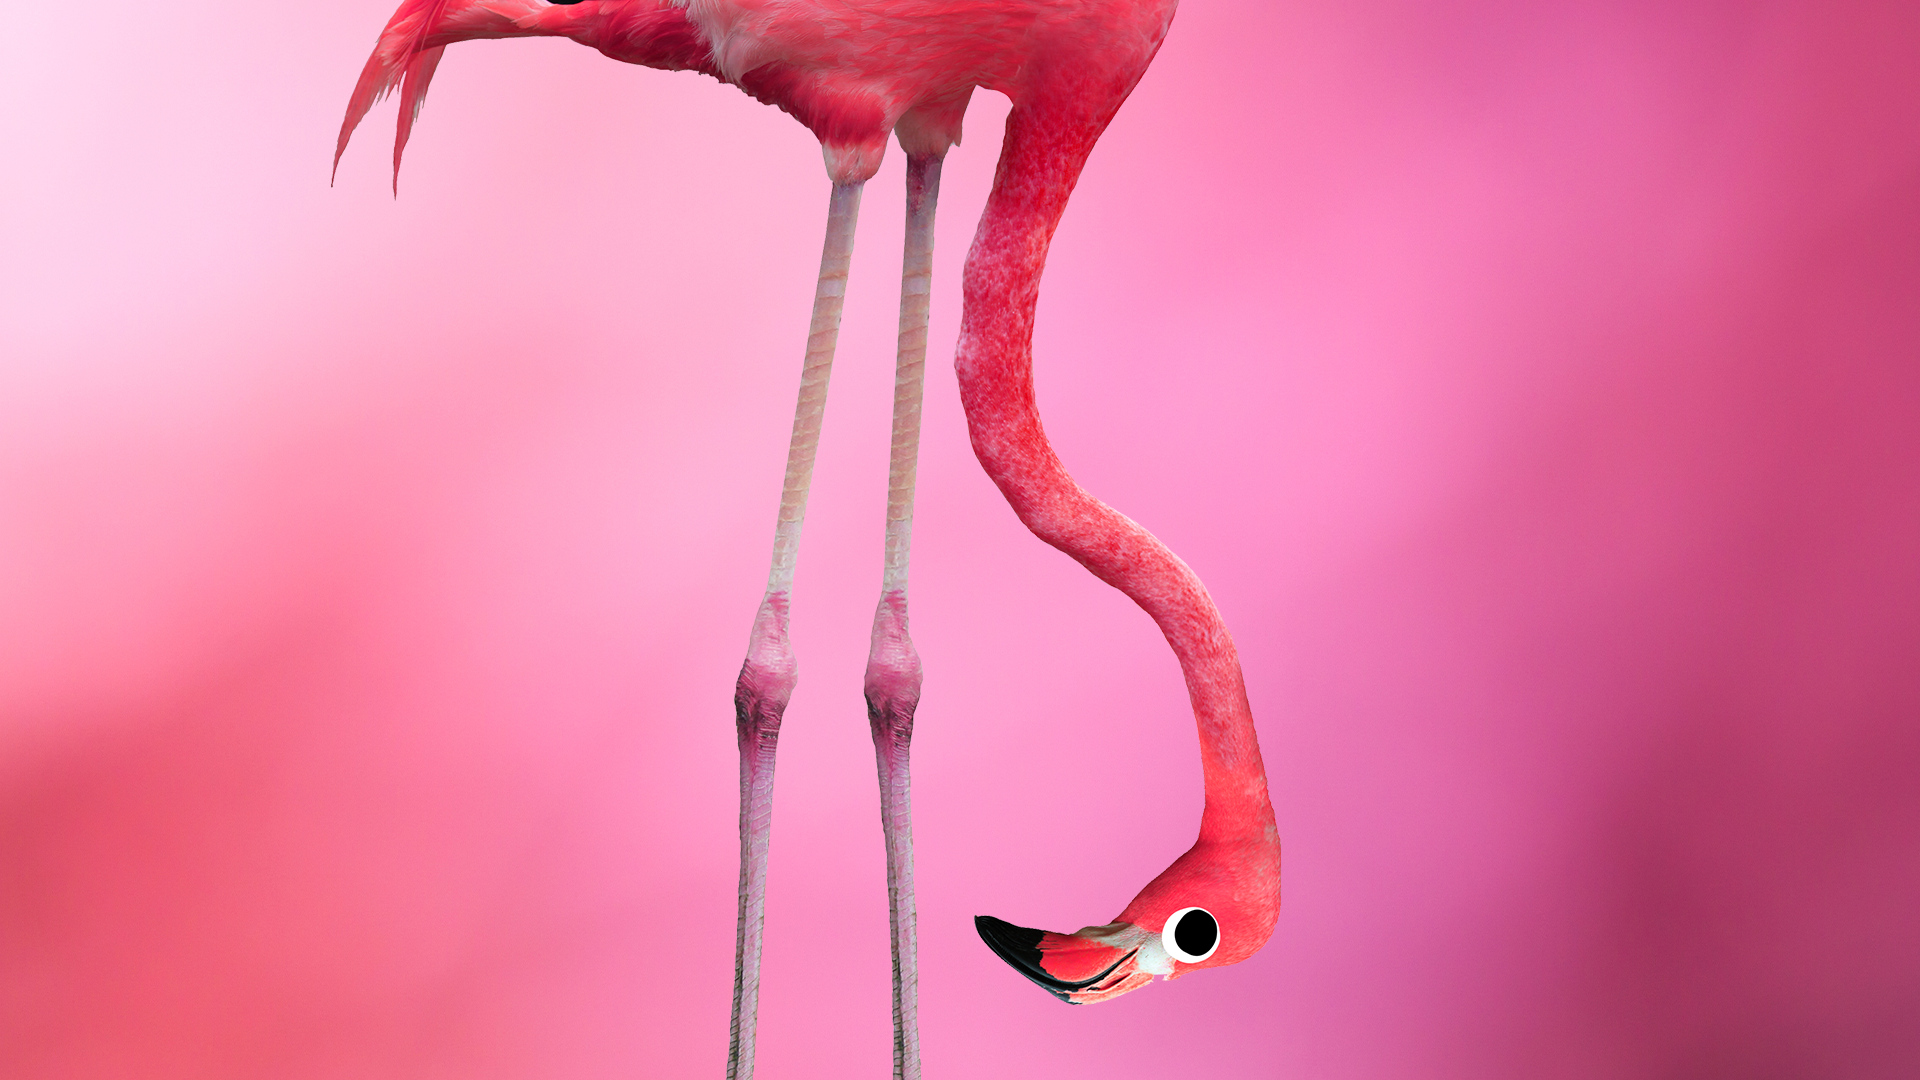 Goofy flamingo on pink background